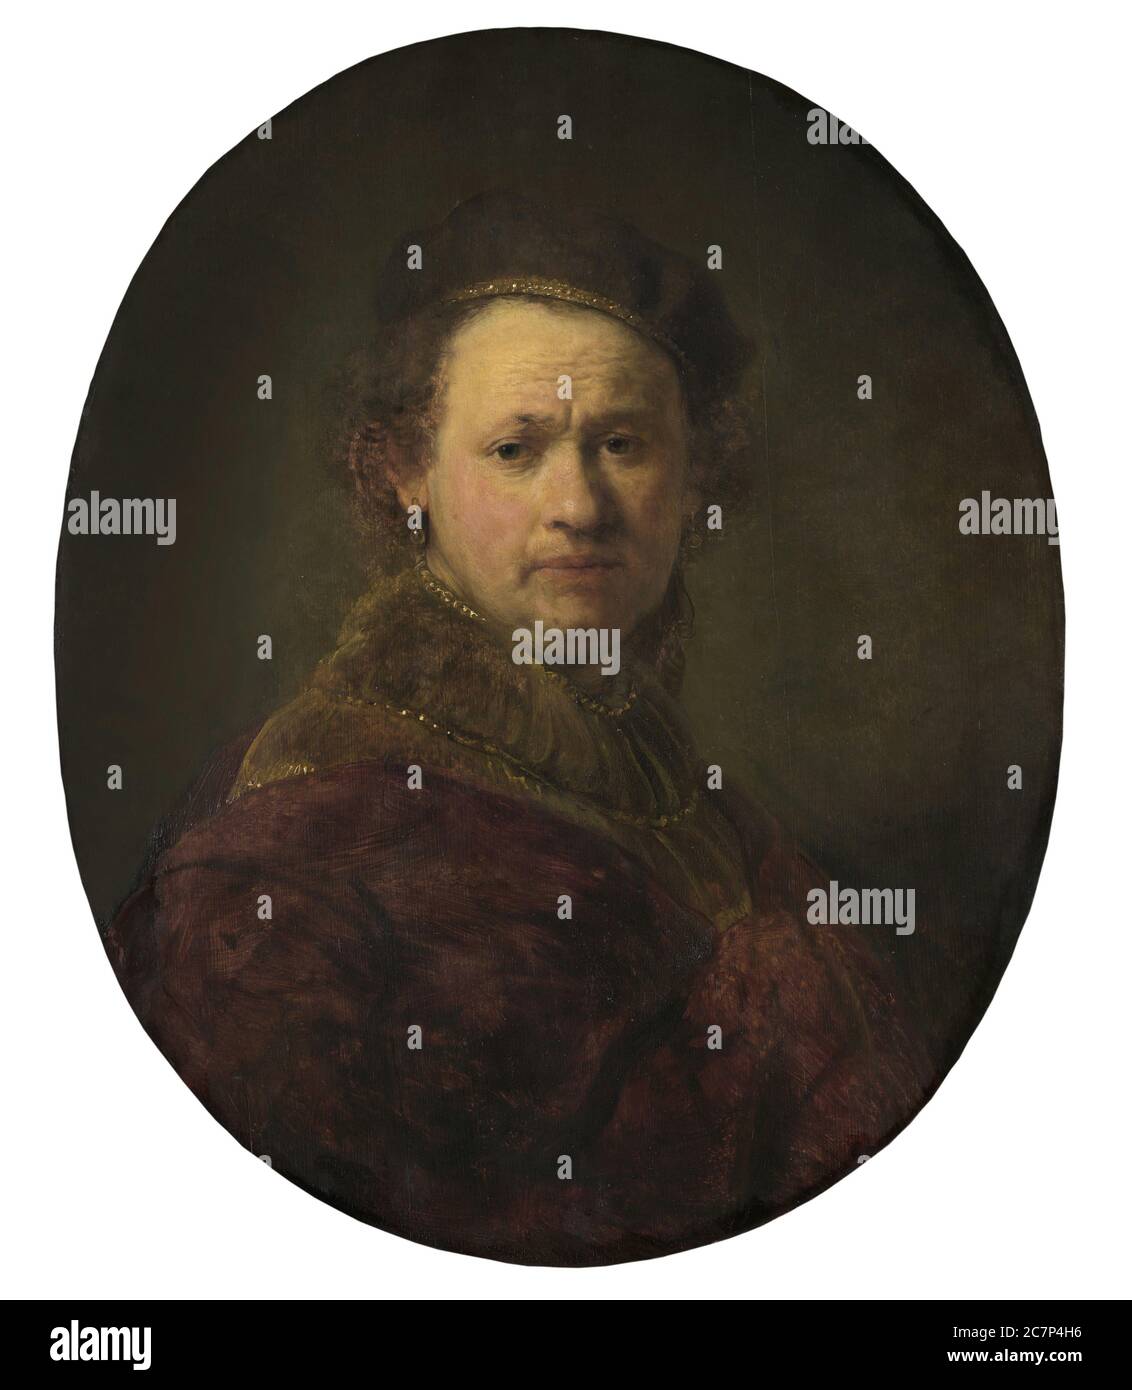 Kunstwerk des berühmten alten Meisters Rembrandt. Stockfoto